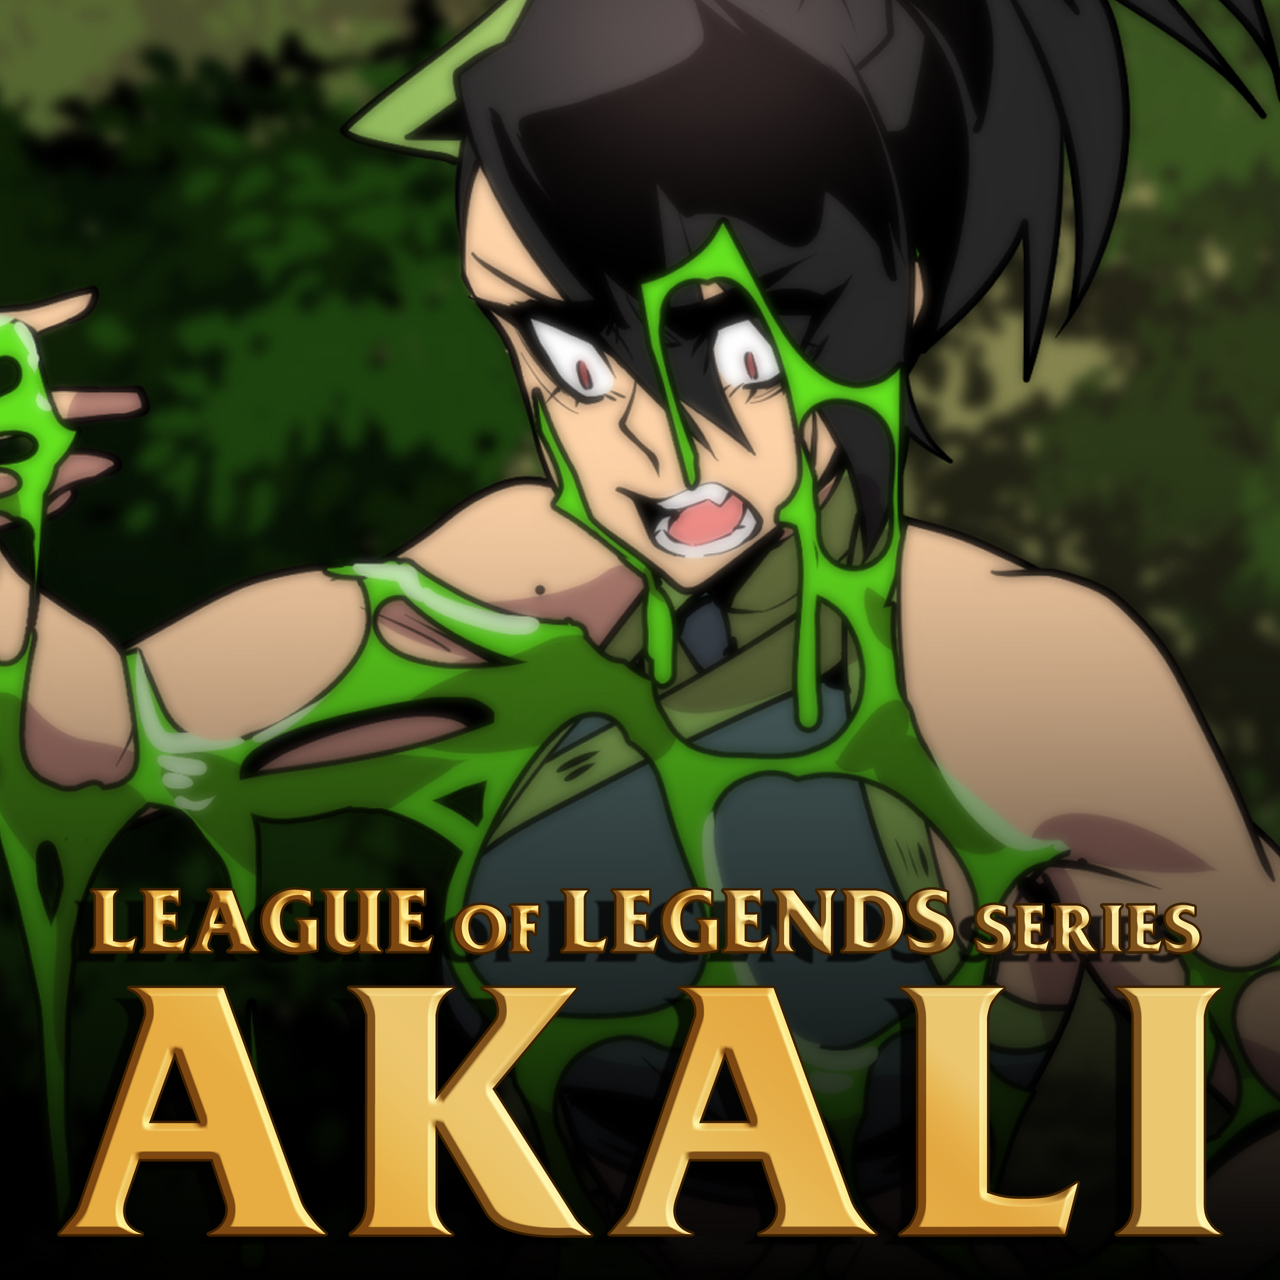 League of Legends Series: Akali